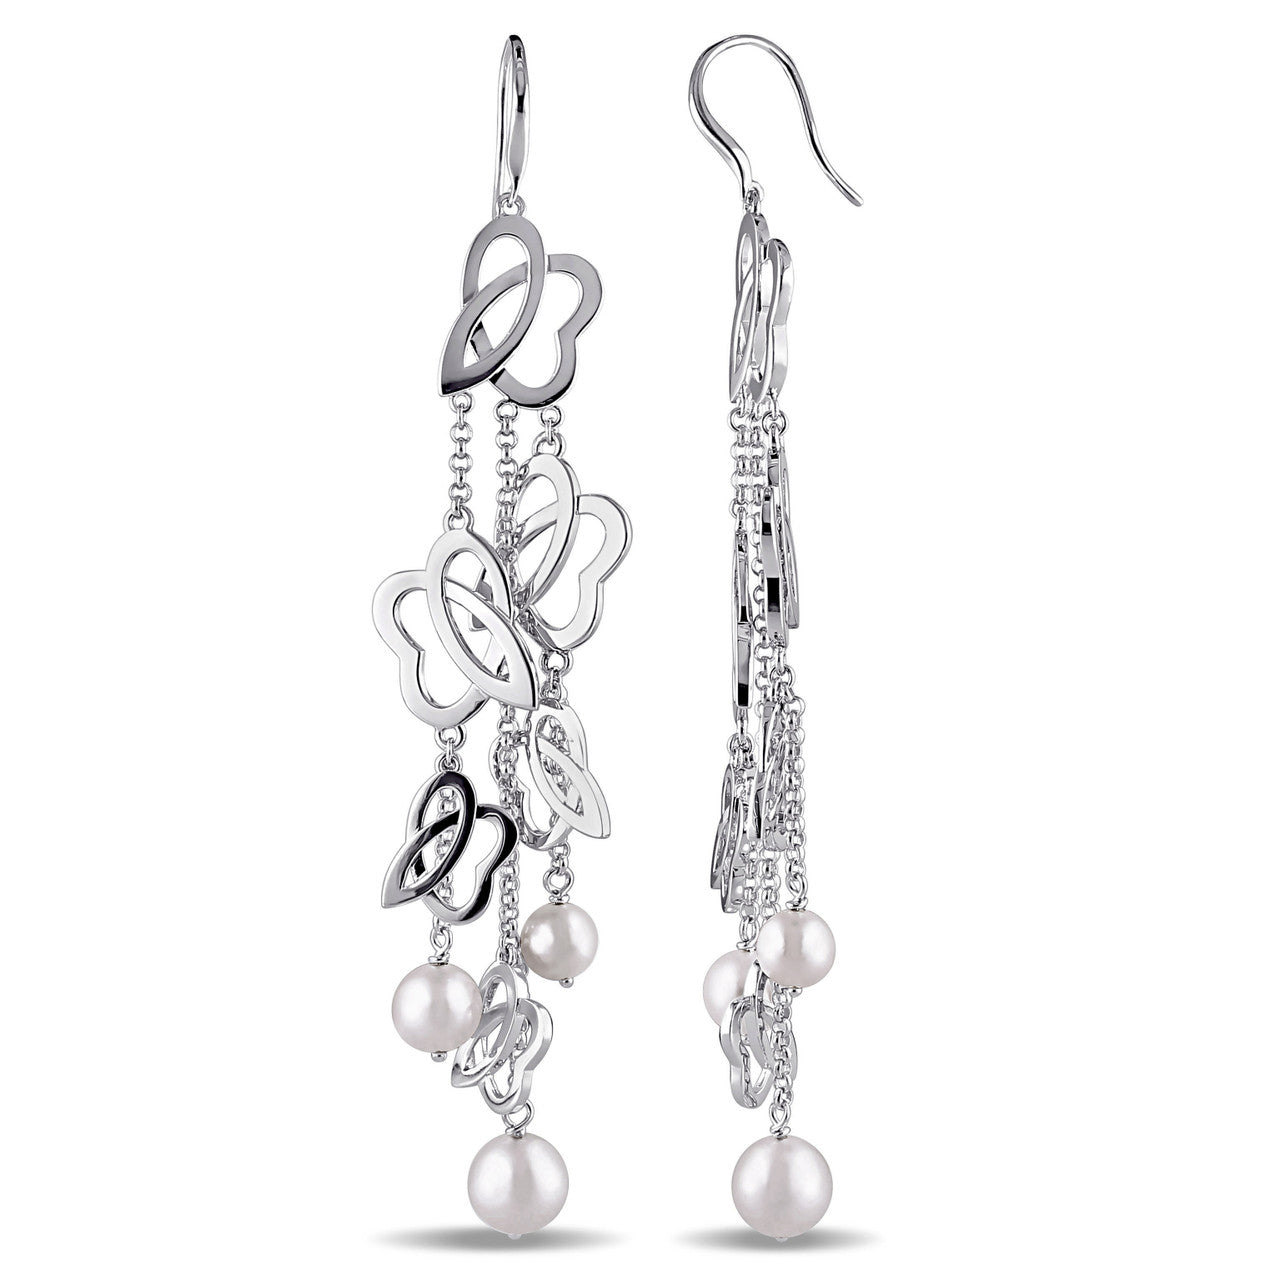 Julianna B Cultured Freshwater Pearl Earrings in Sterling Silver - 75000002135 | Ice Jewellery Australia